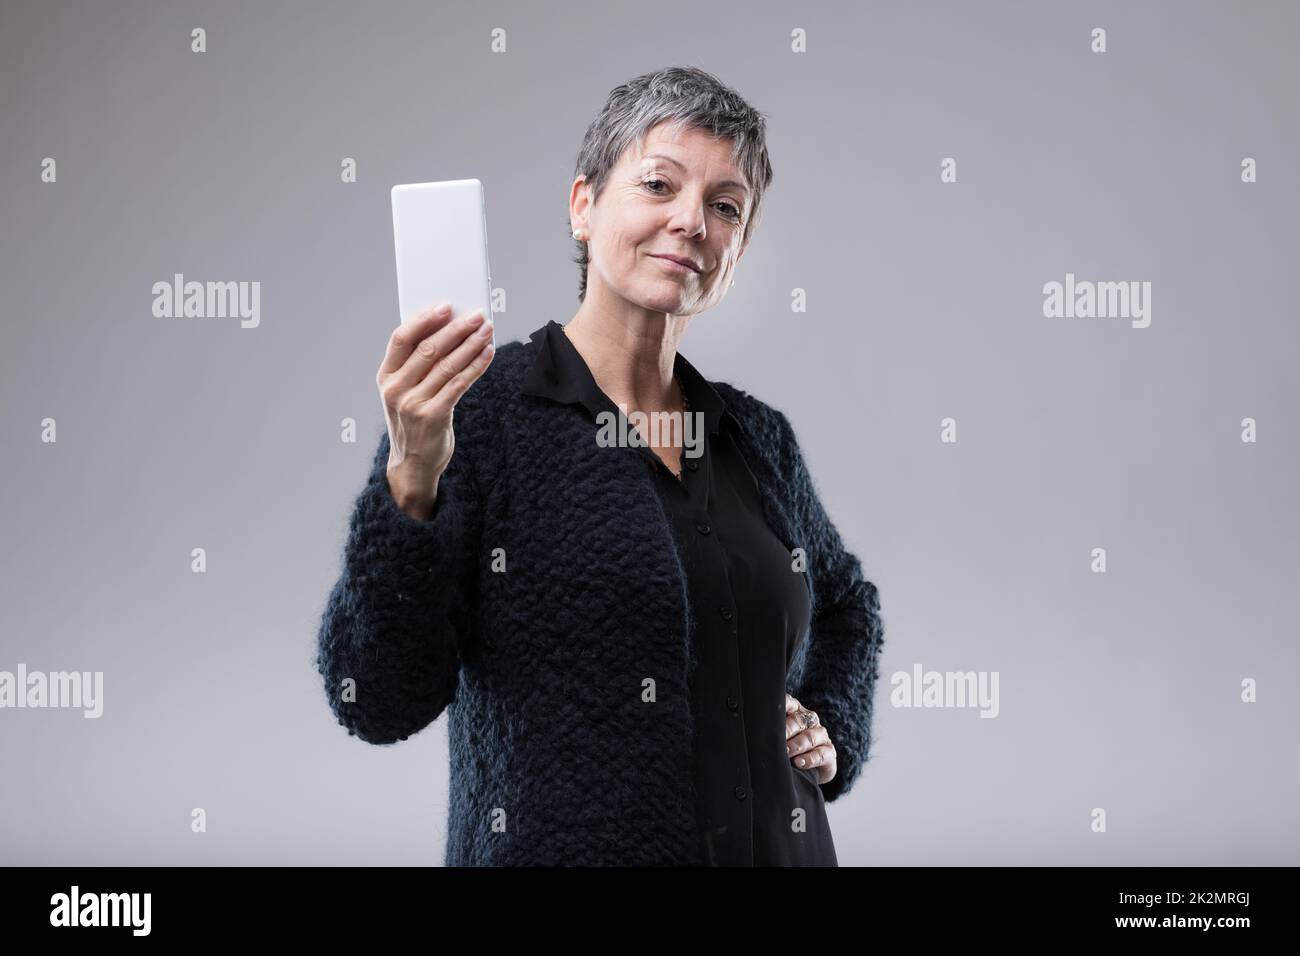 Attraktive selbstbewusste Frau mit einem Handy Stockfoto